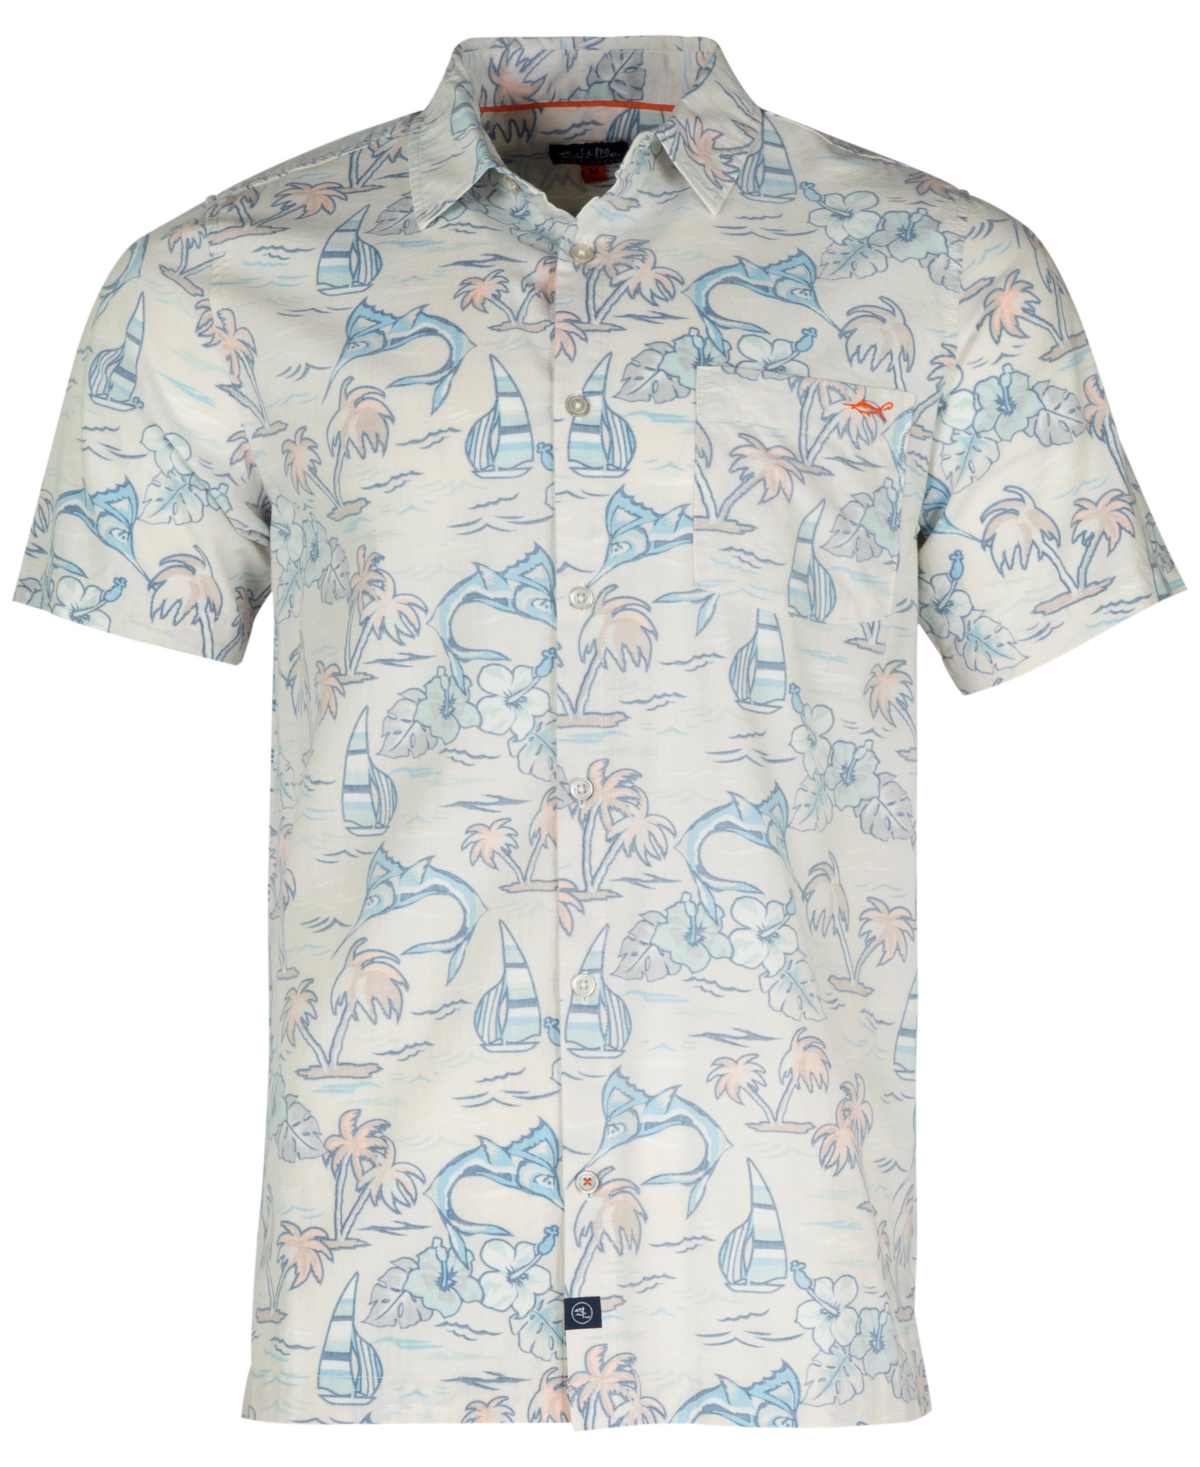 Men's Ocean Drift Graphic Print Short-Sleeve Button-Up Shirt - Chalk